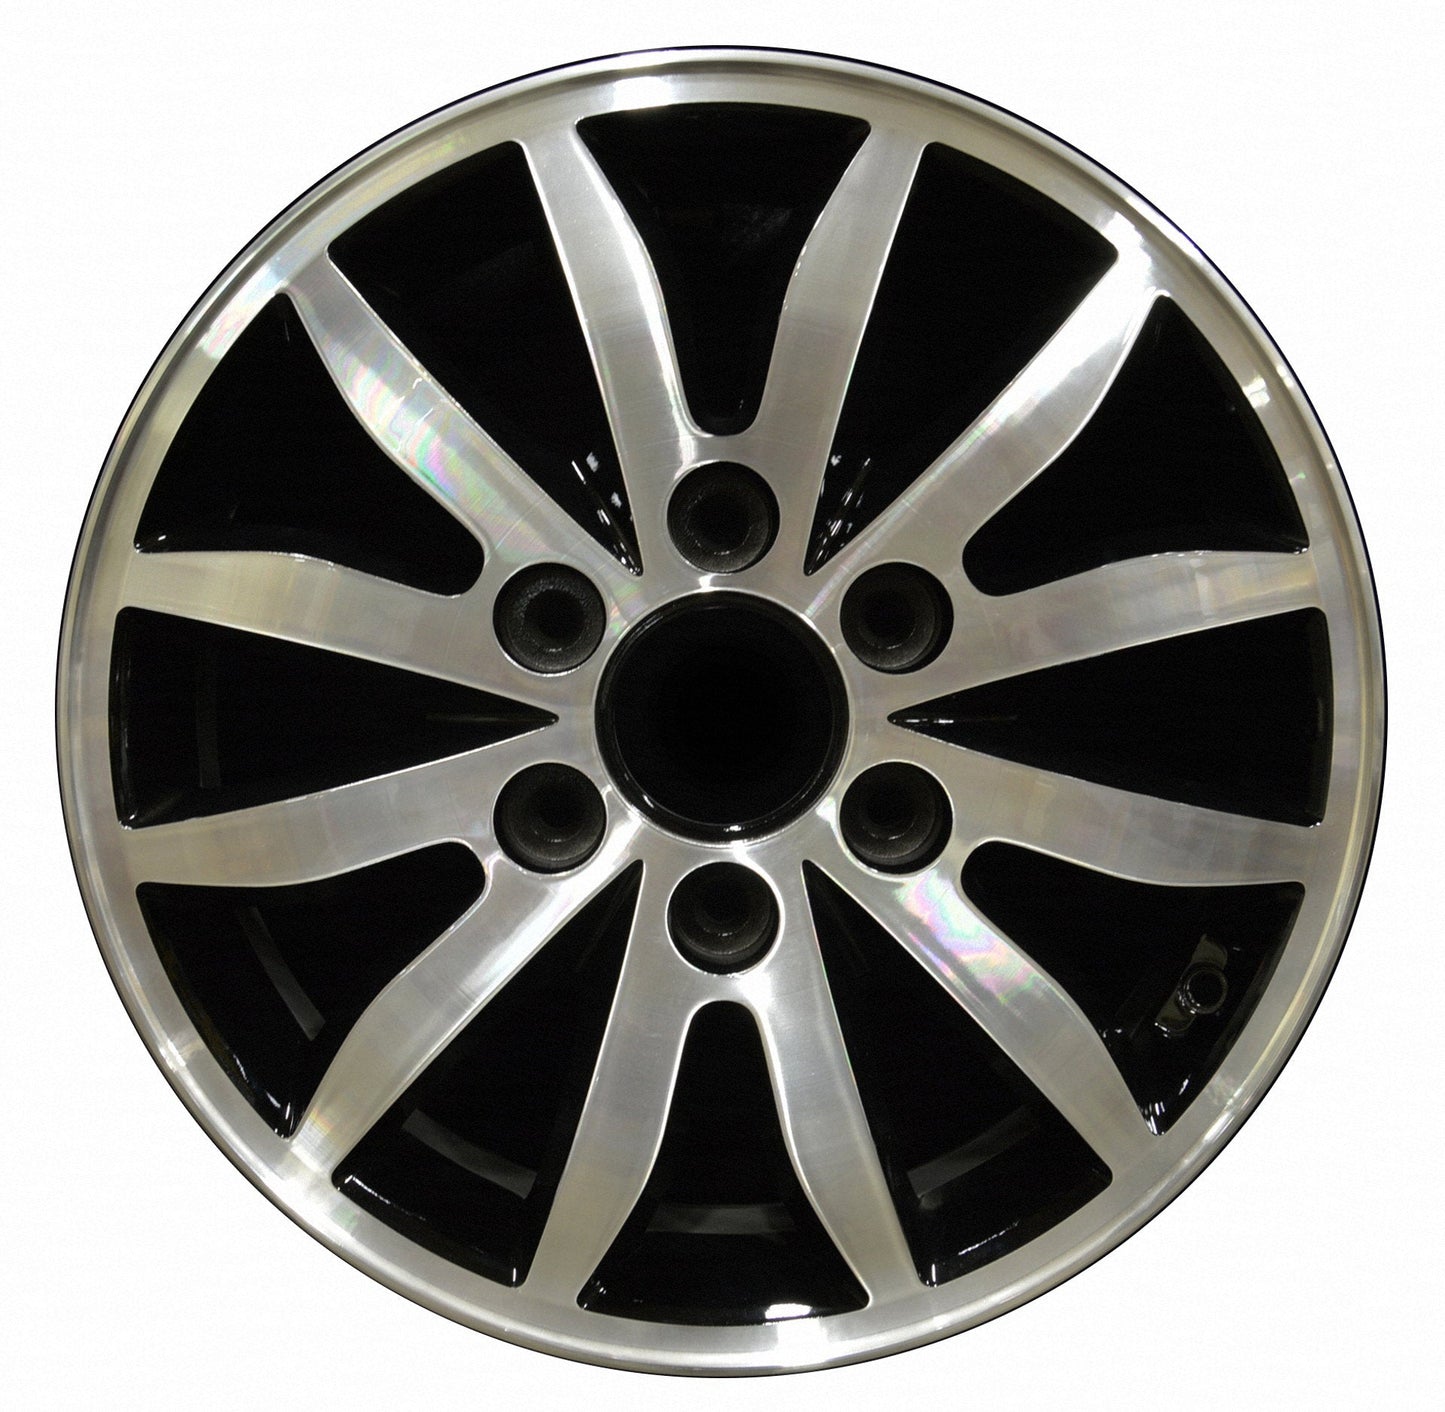 Kia Sedona  2006, 2007, 2008, 2009, 2010, 2011, 2012 Factory OEM Car Wheel Size 17x6.5 Alloy WAO.74639.PB01.MABRT